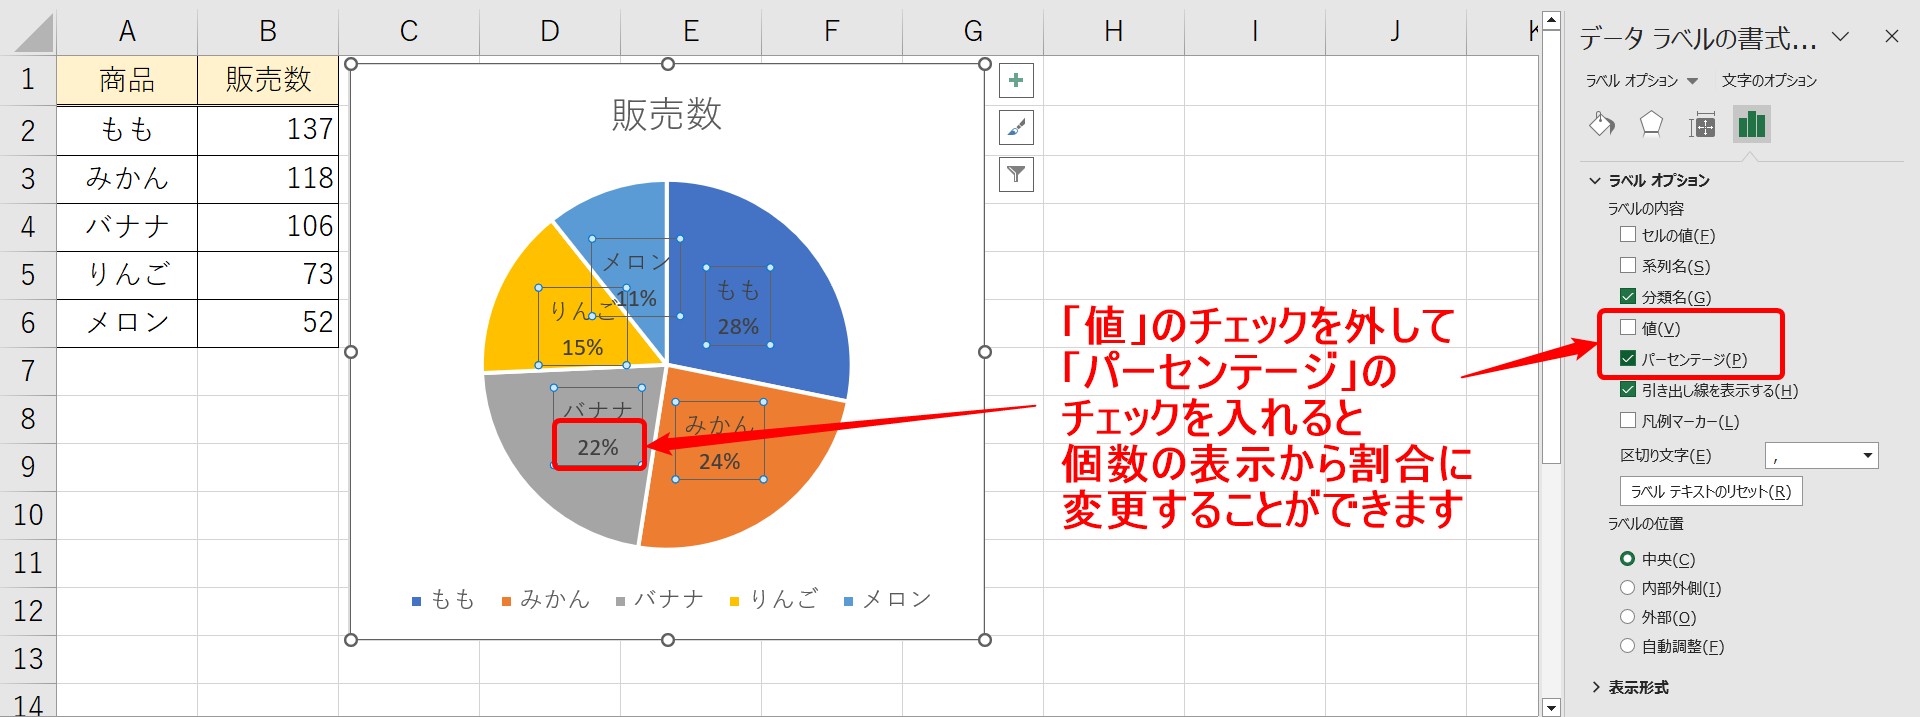 円グラフの表示設定